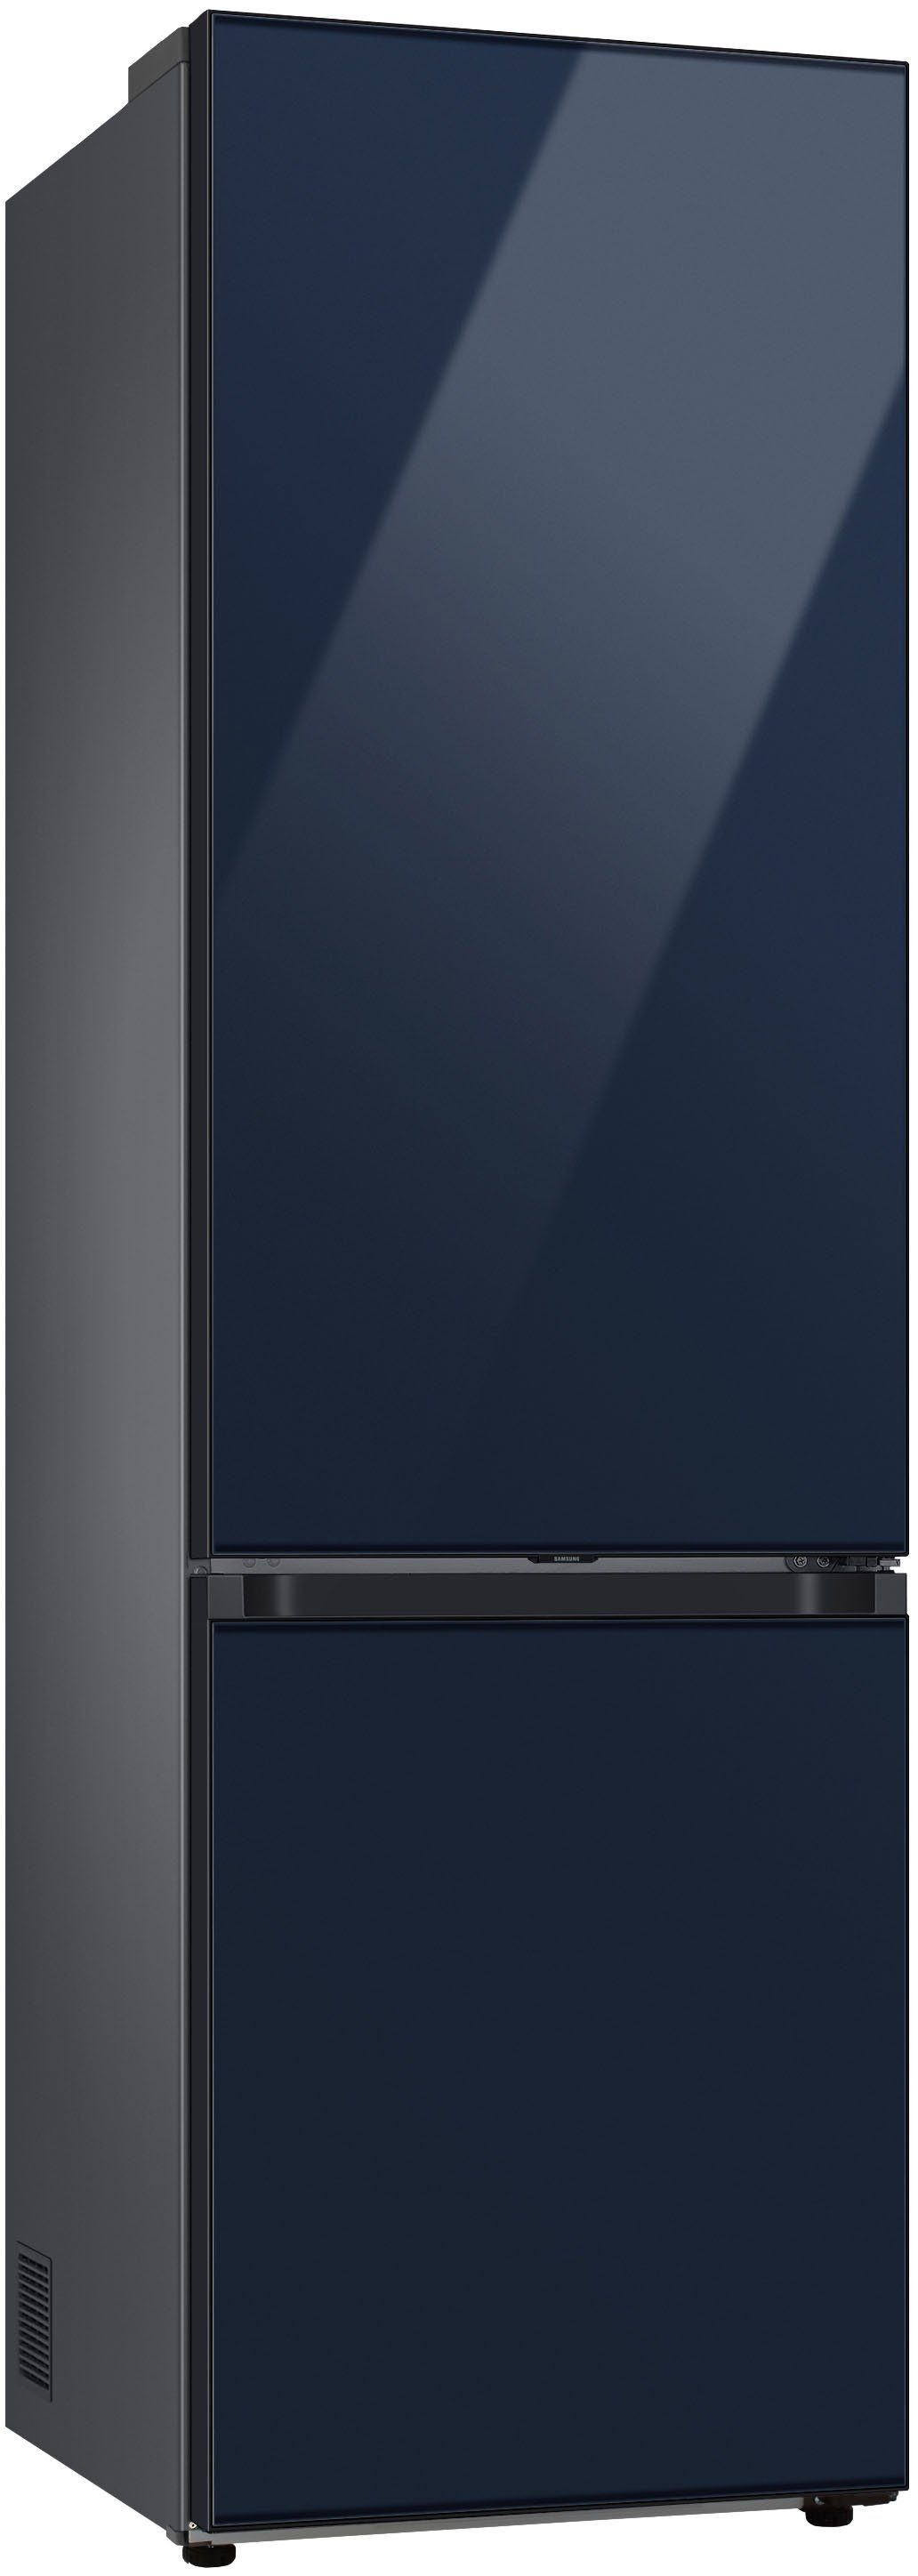 Samsung Kühl-/Gefrierkombination Bespoke RL38A6B6C41, 203 cm 59,5 cm breit hoch